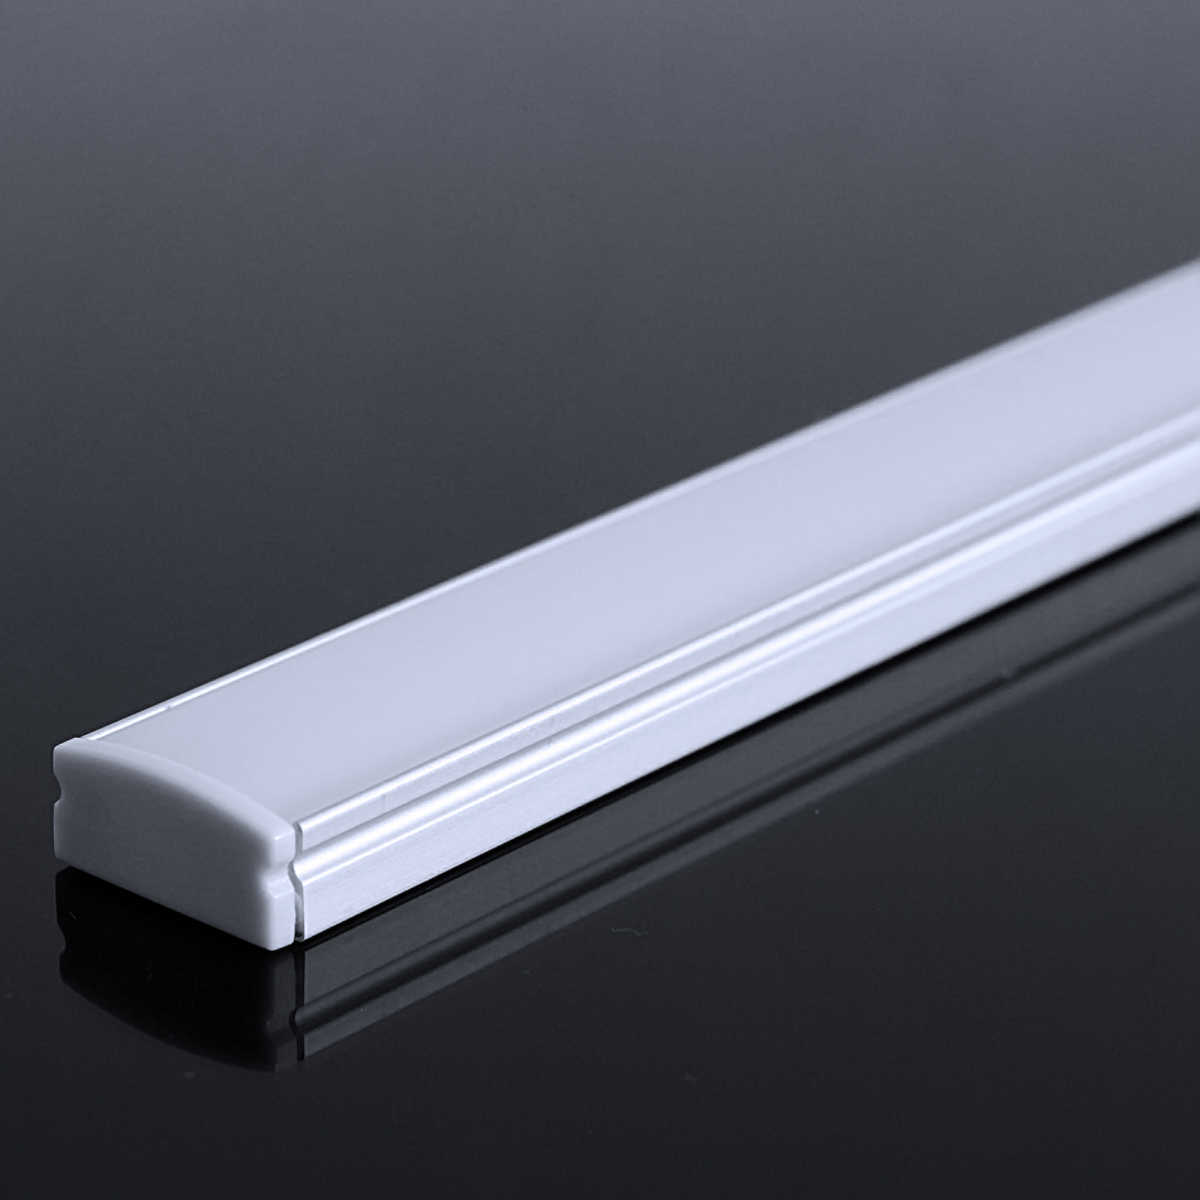 LED Flachprofil "Slim-Line" | Abdeckung diffus | Zuschnitt auf 95cm |